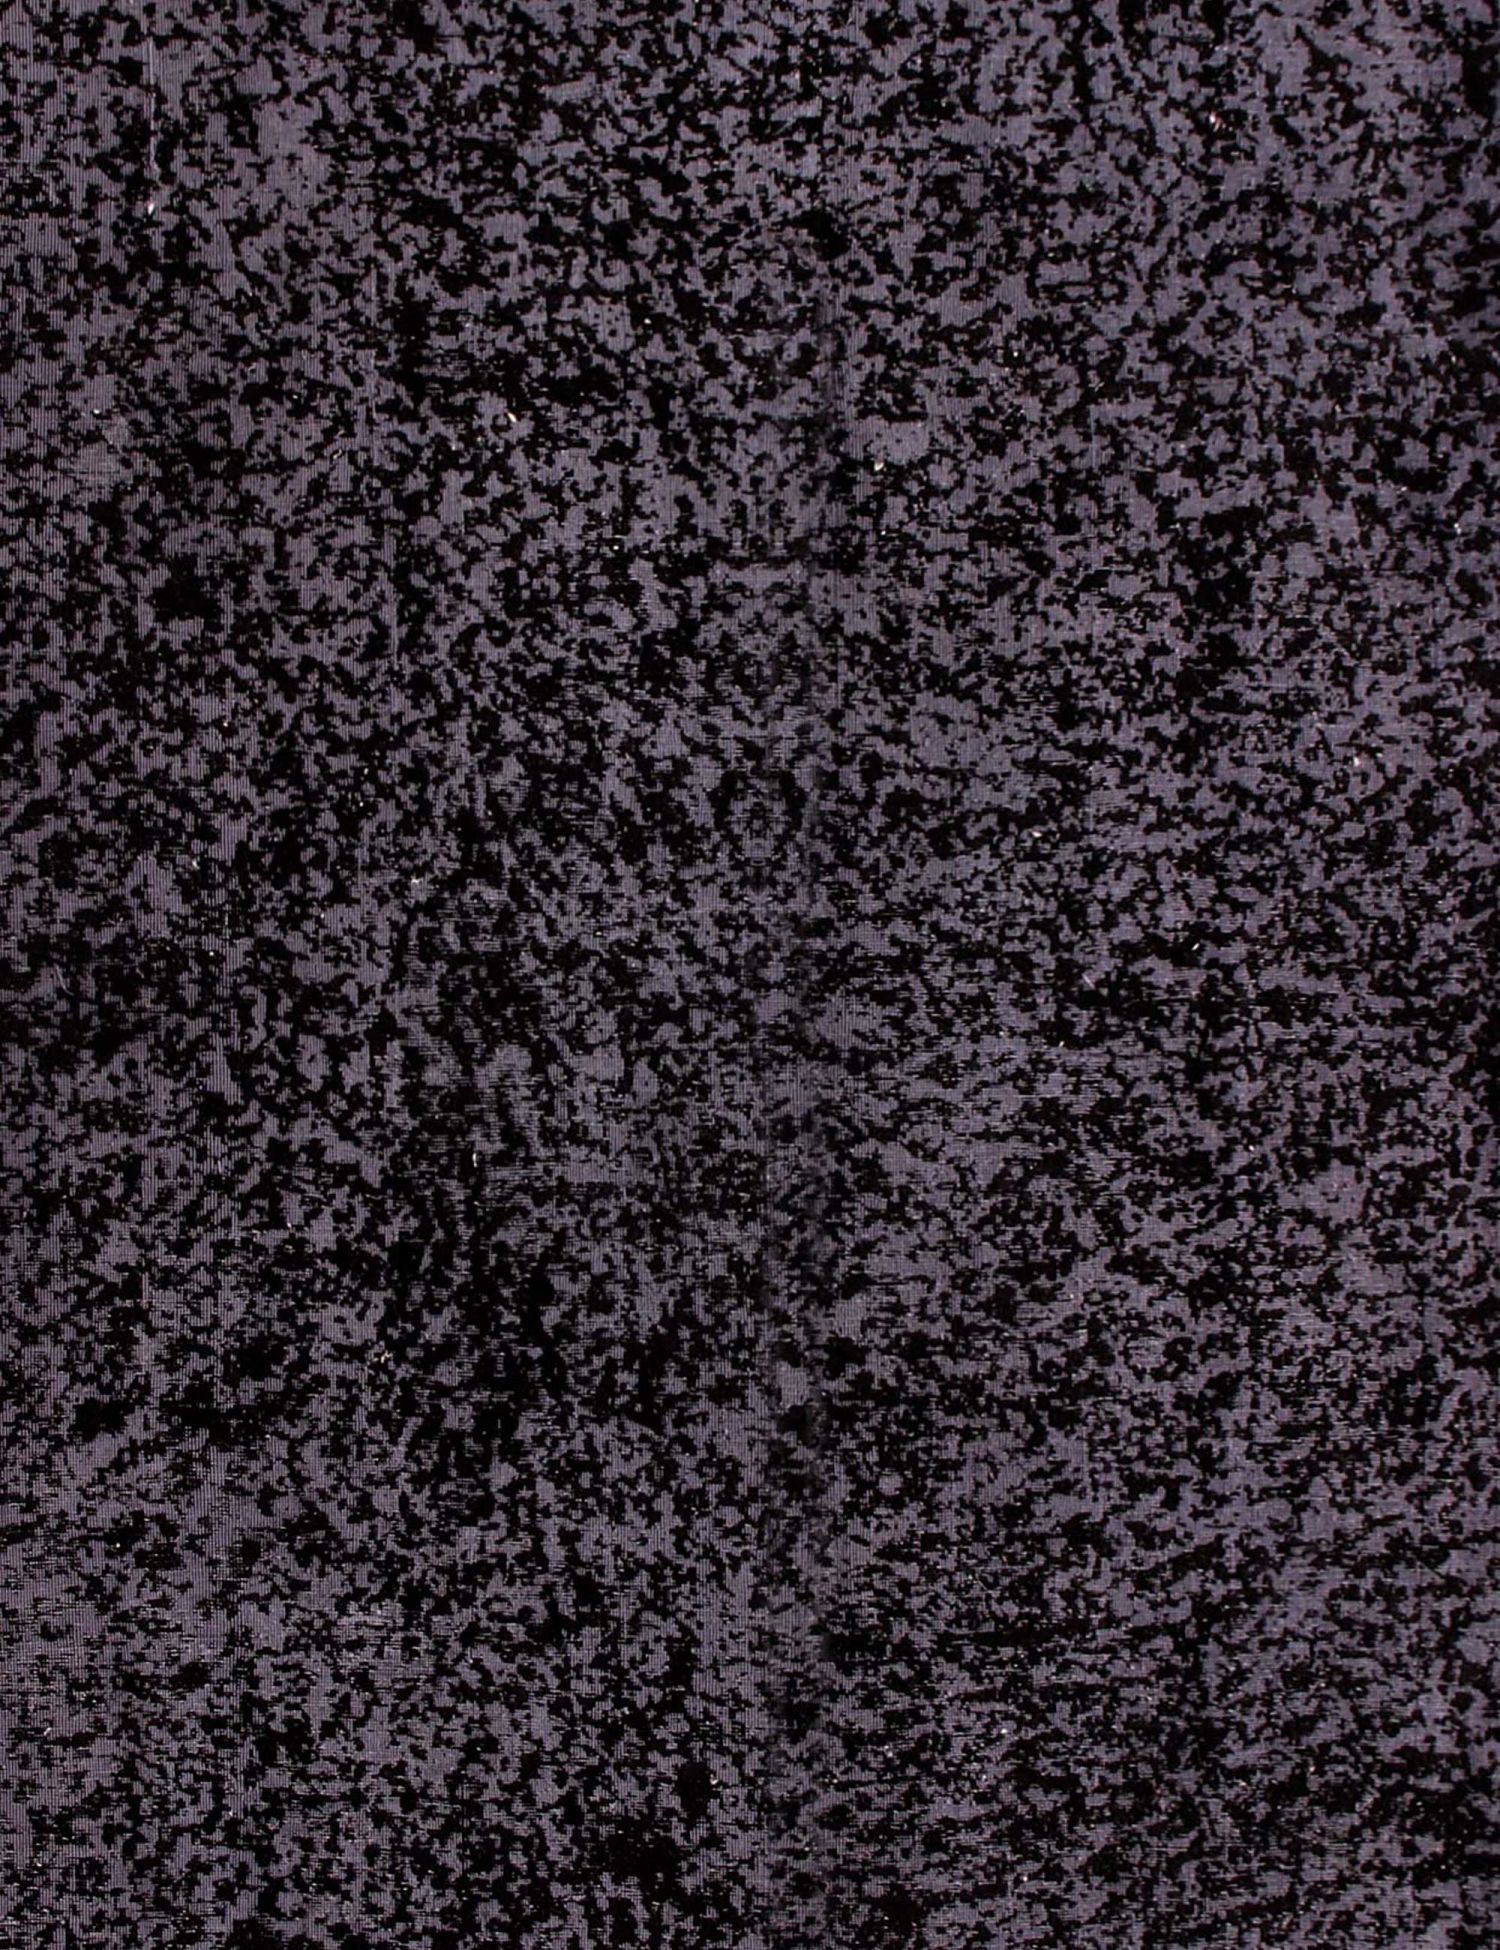 Persischer Vintage Teppich  schwarz <br/>387 x 290 cm